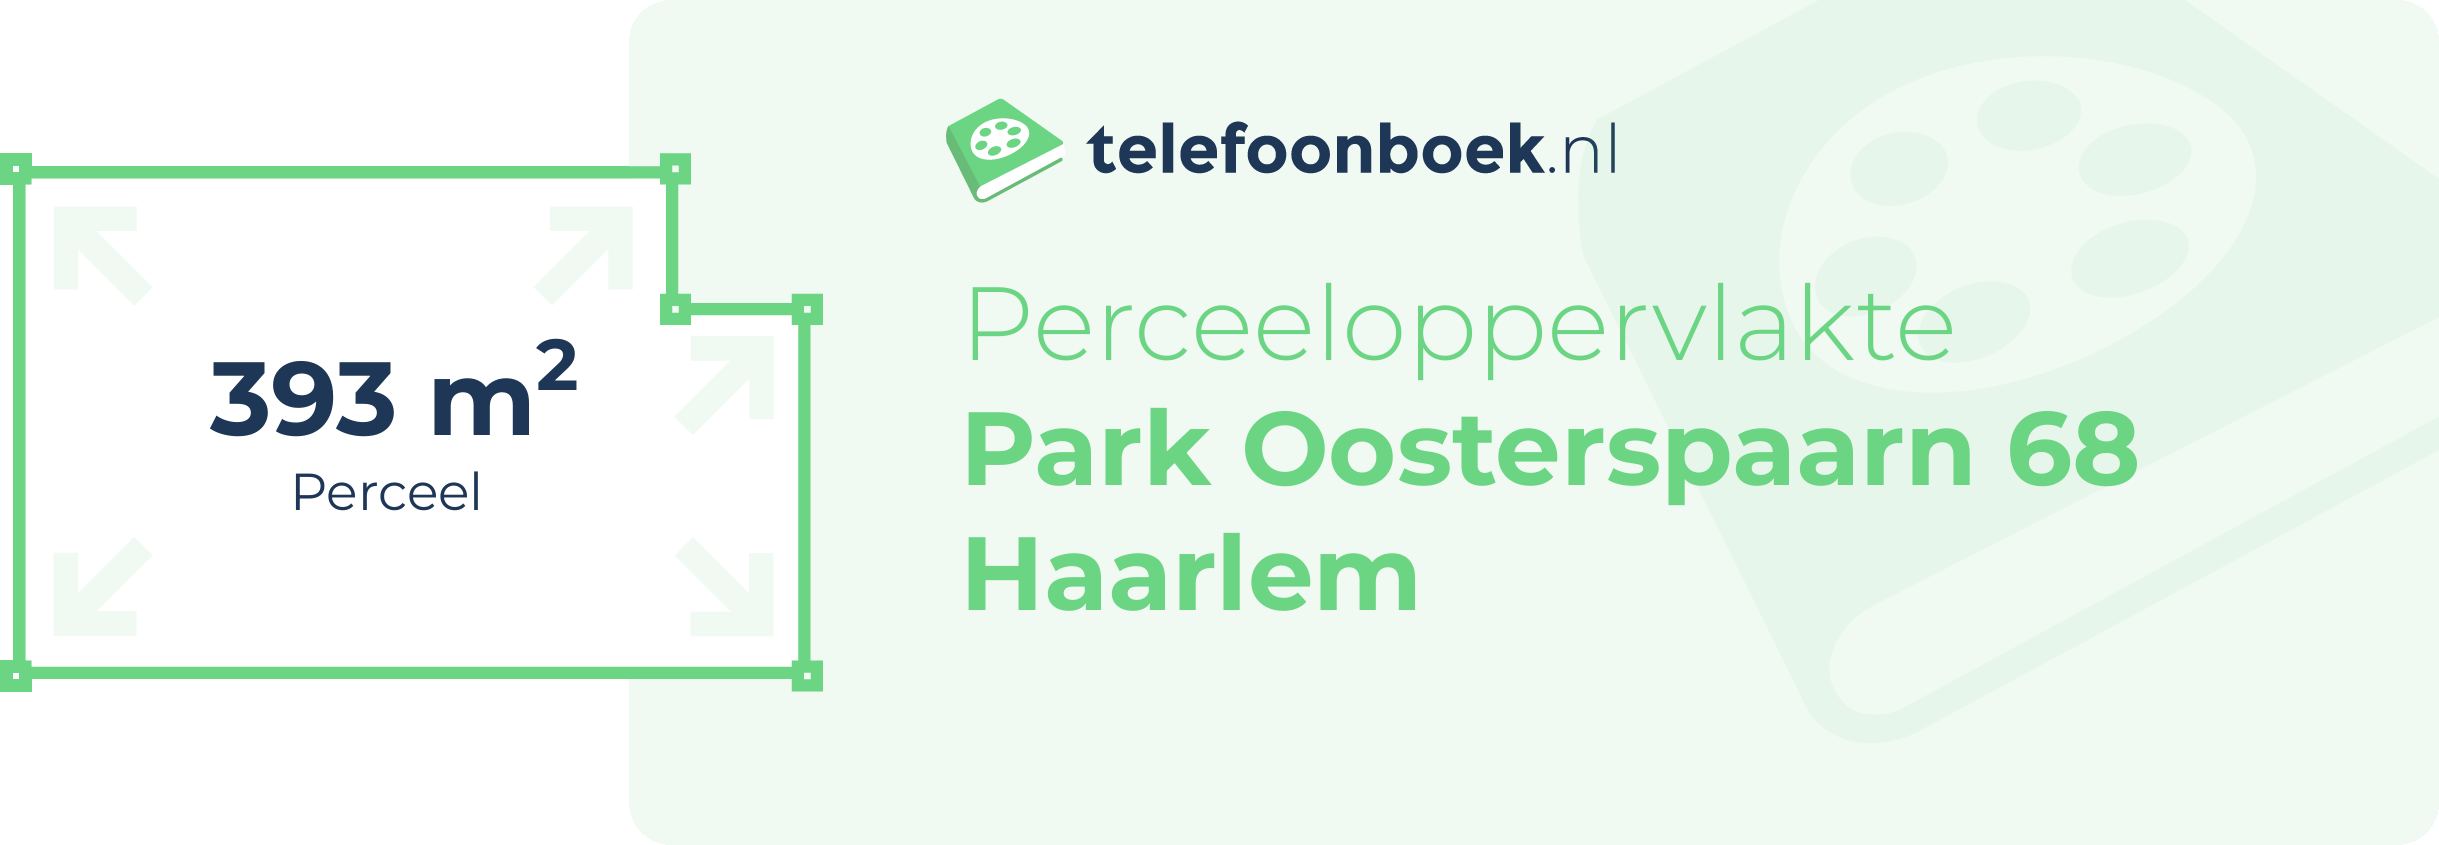 Perceeloppervlakte Park Oosterspaarn 68 Haarlem